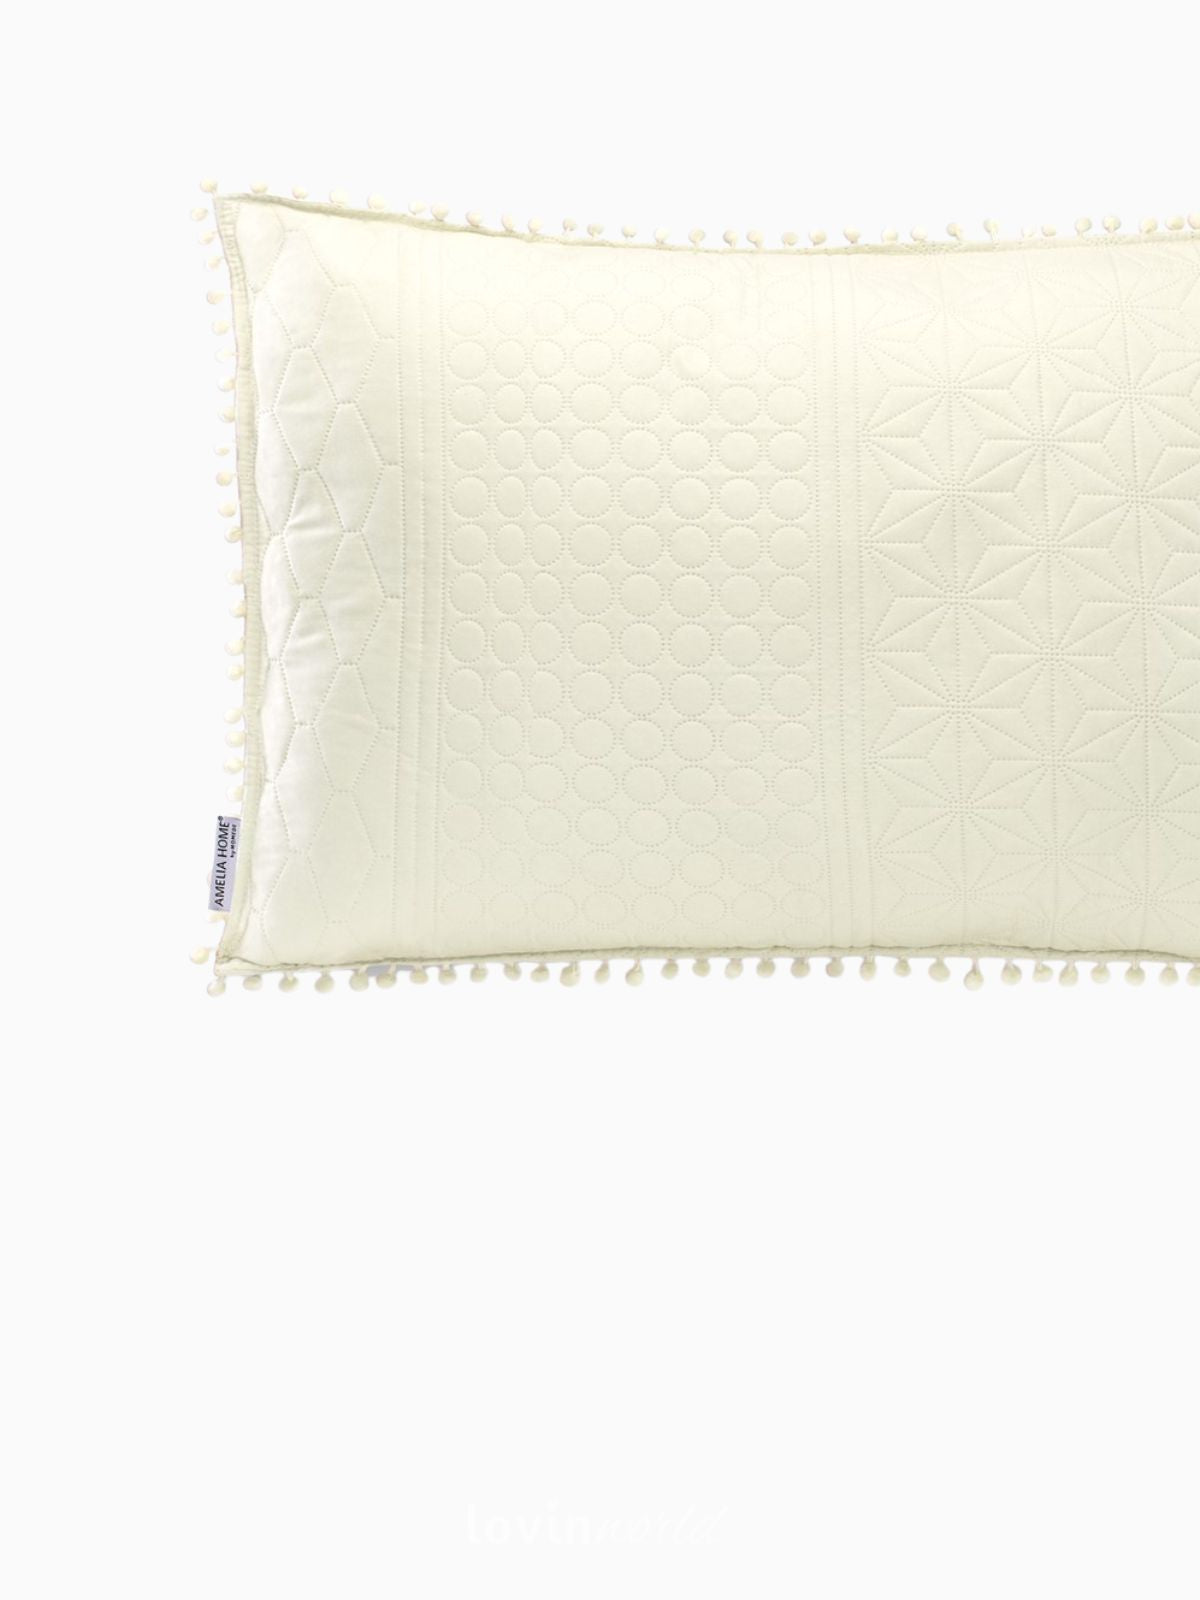 Cuscino decorativo Meadore in colore crema 50x70 cm.-4